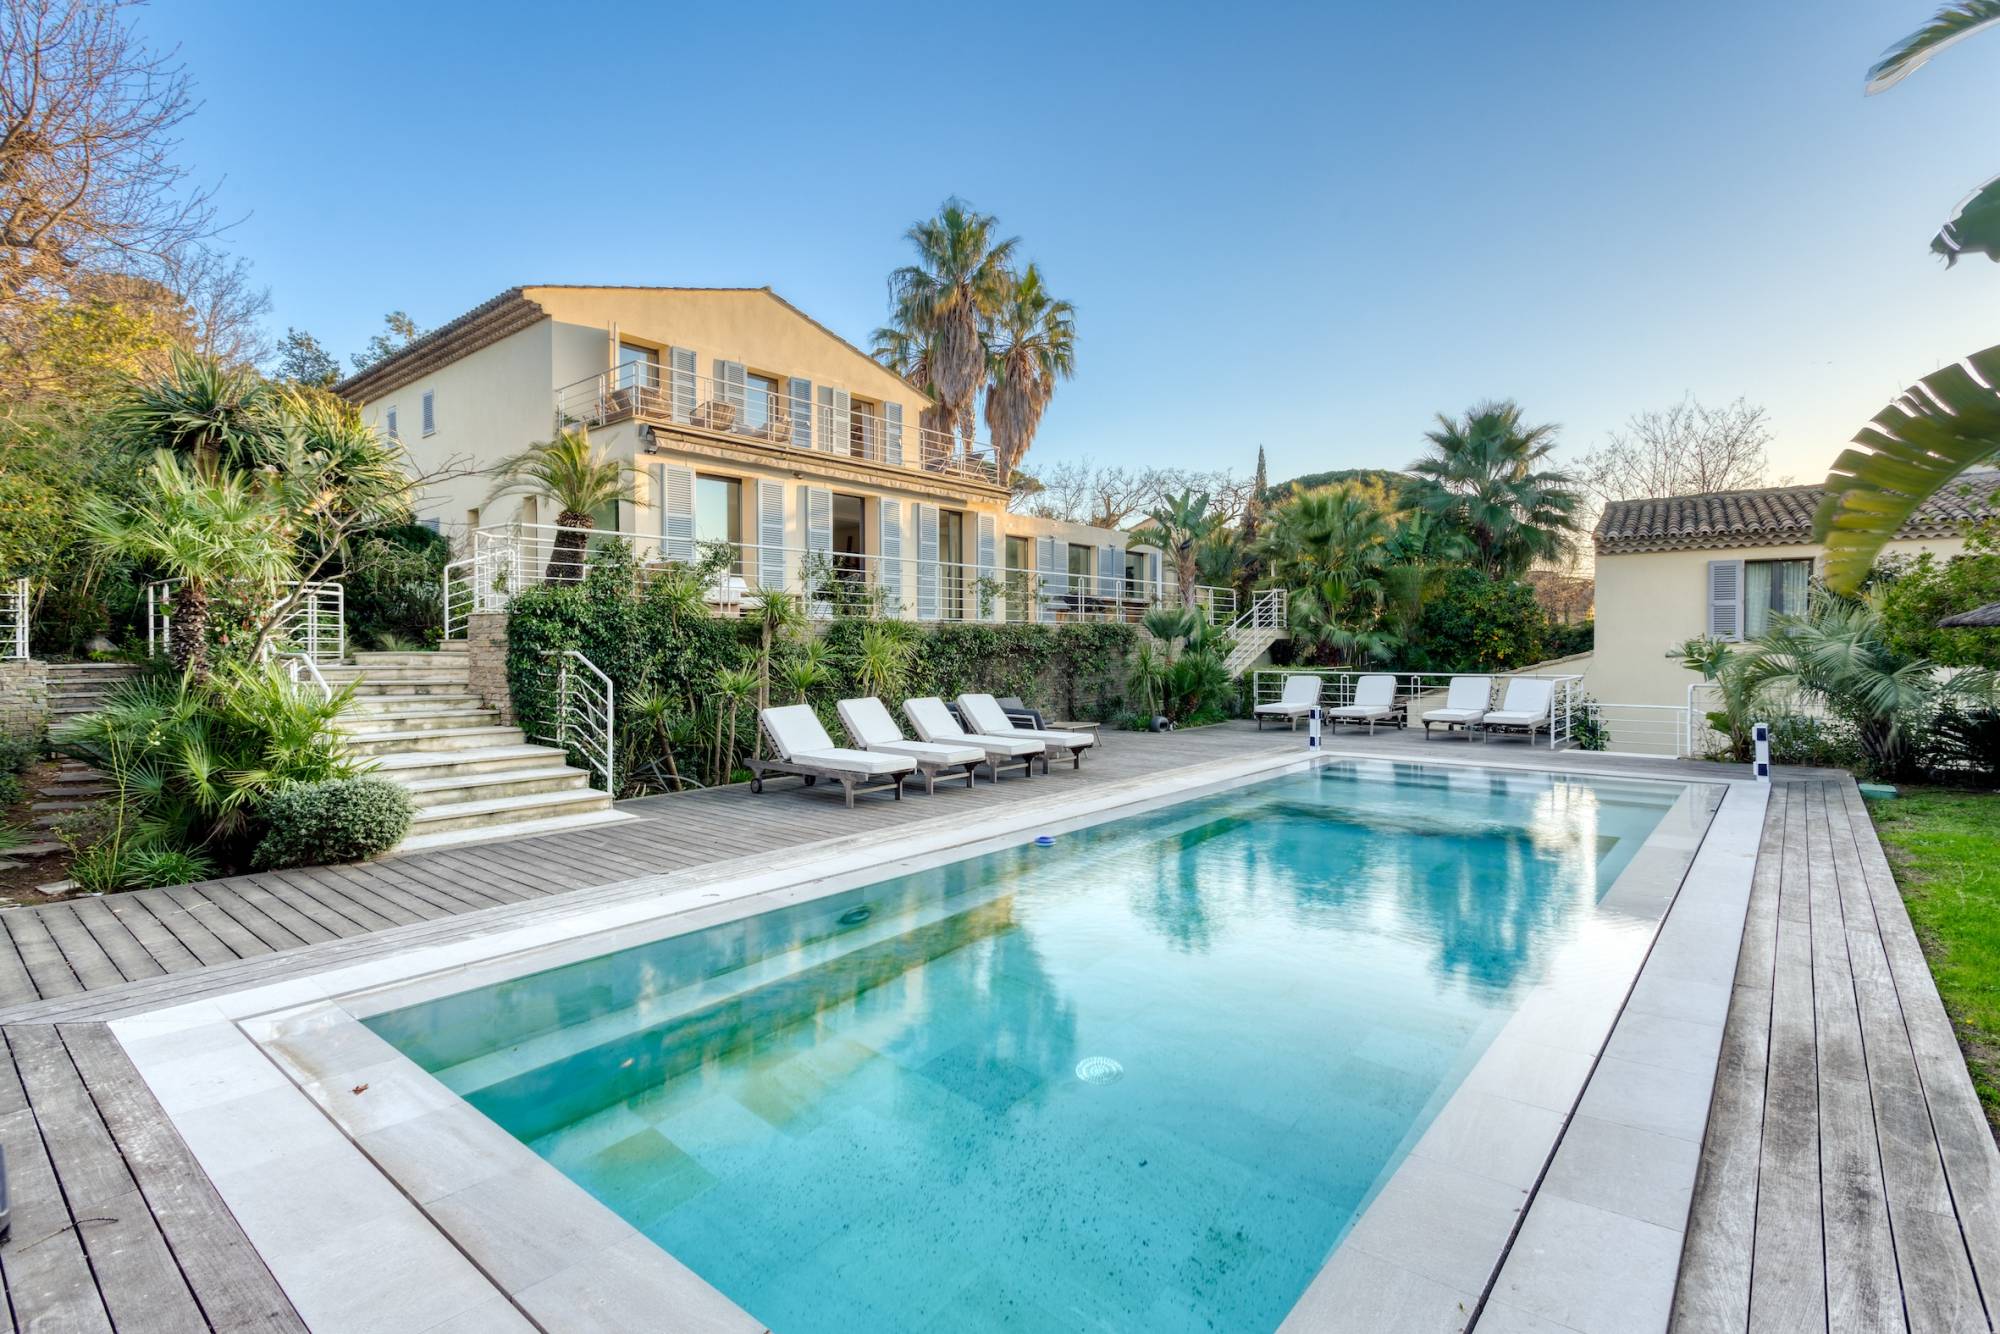 VERKOOP Villa 8(+3) SLPK Saint-Tropez - Uitzonderlijke eigendom / zeezicht + zicht op 